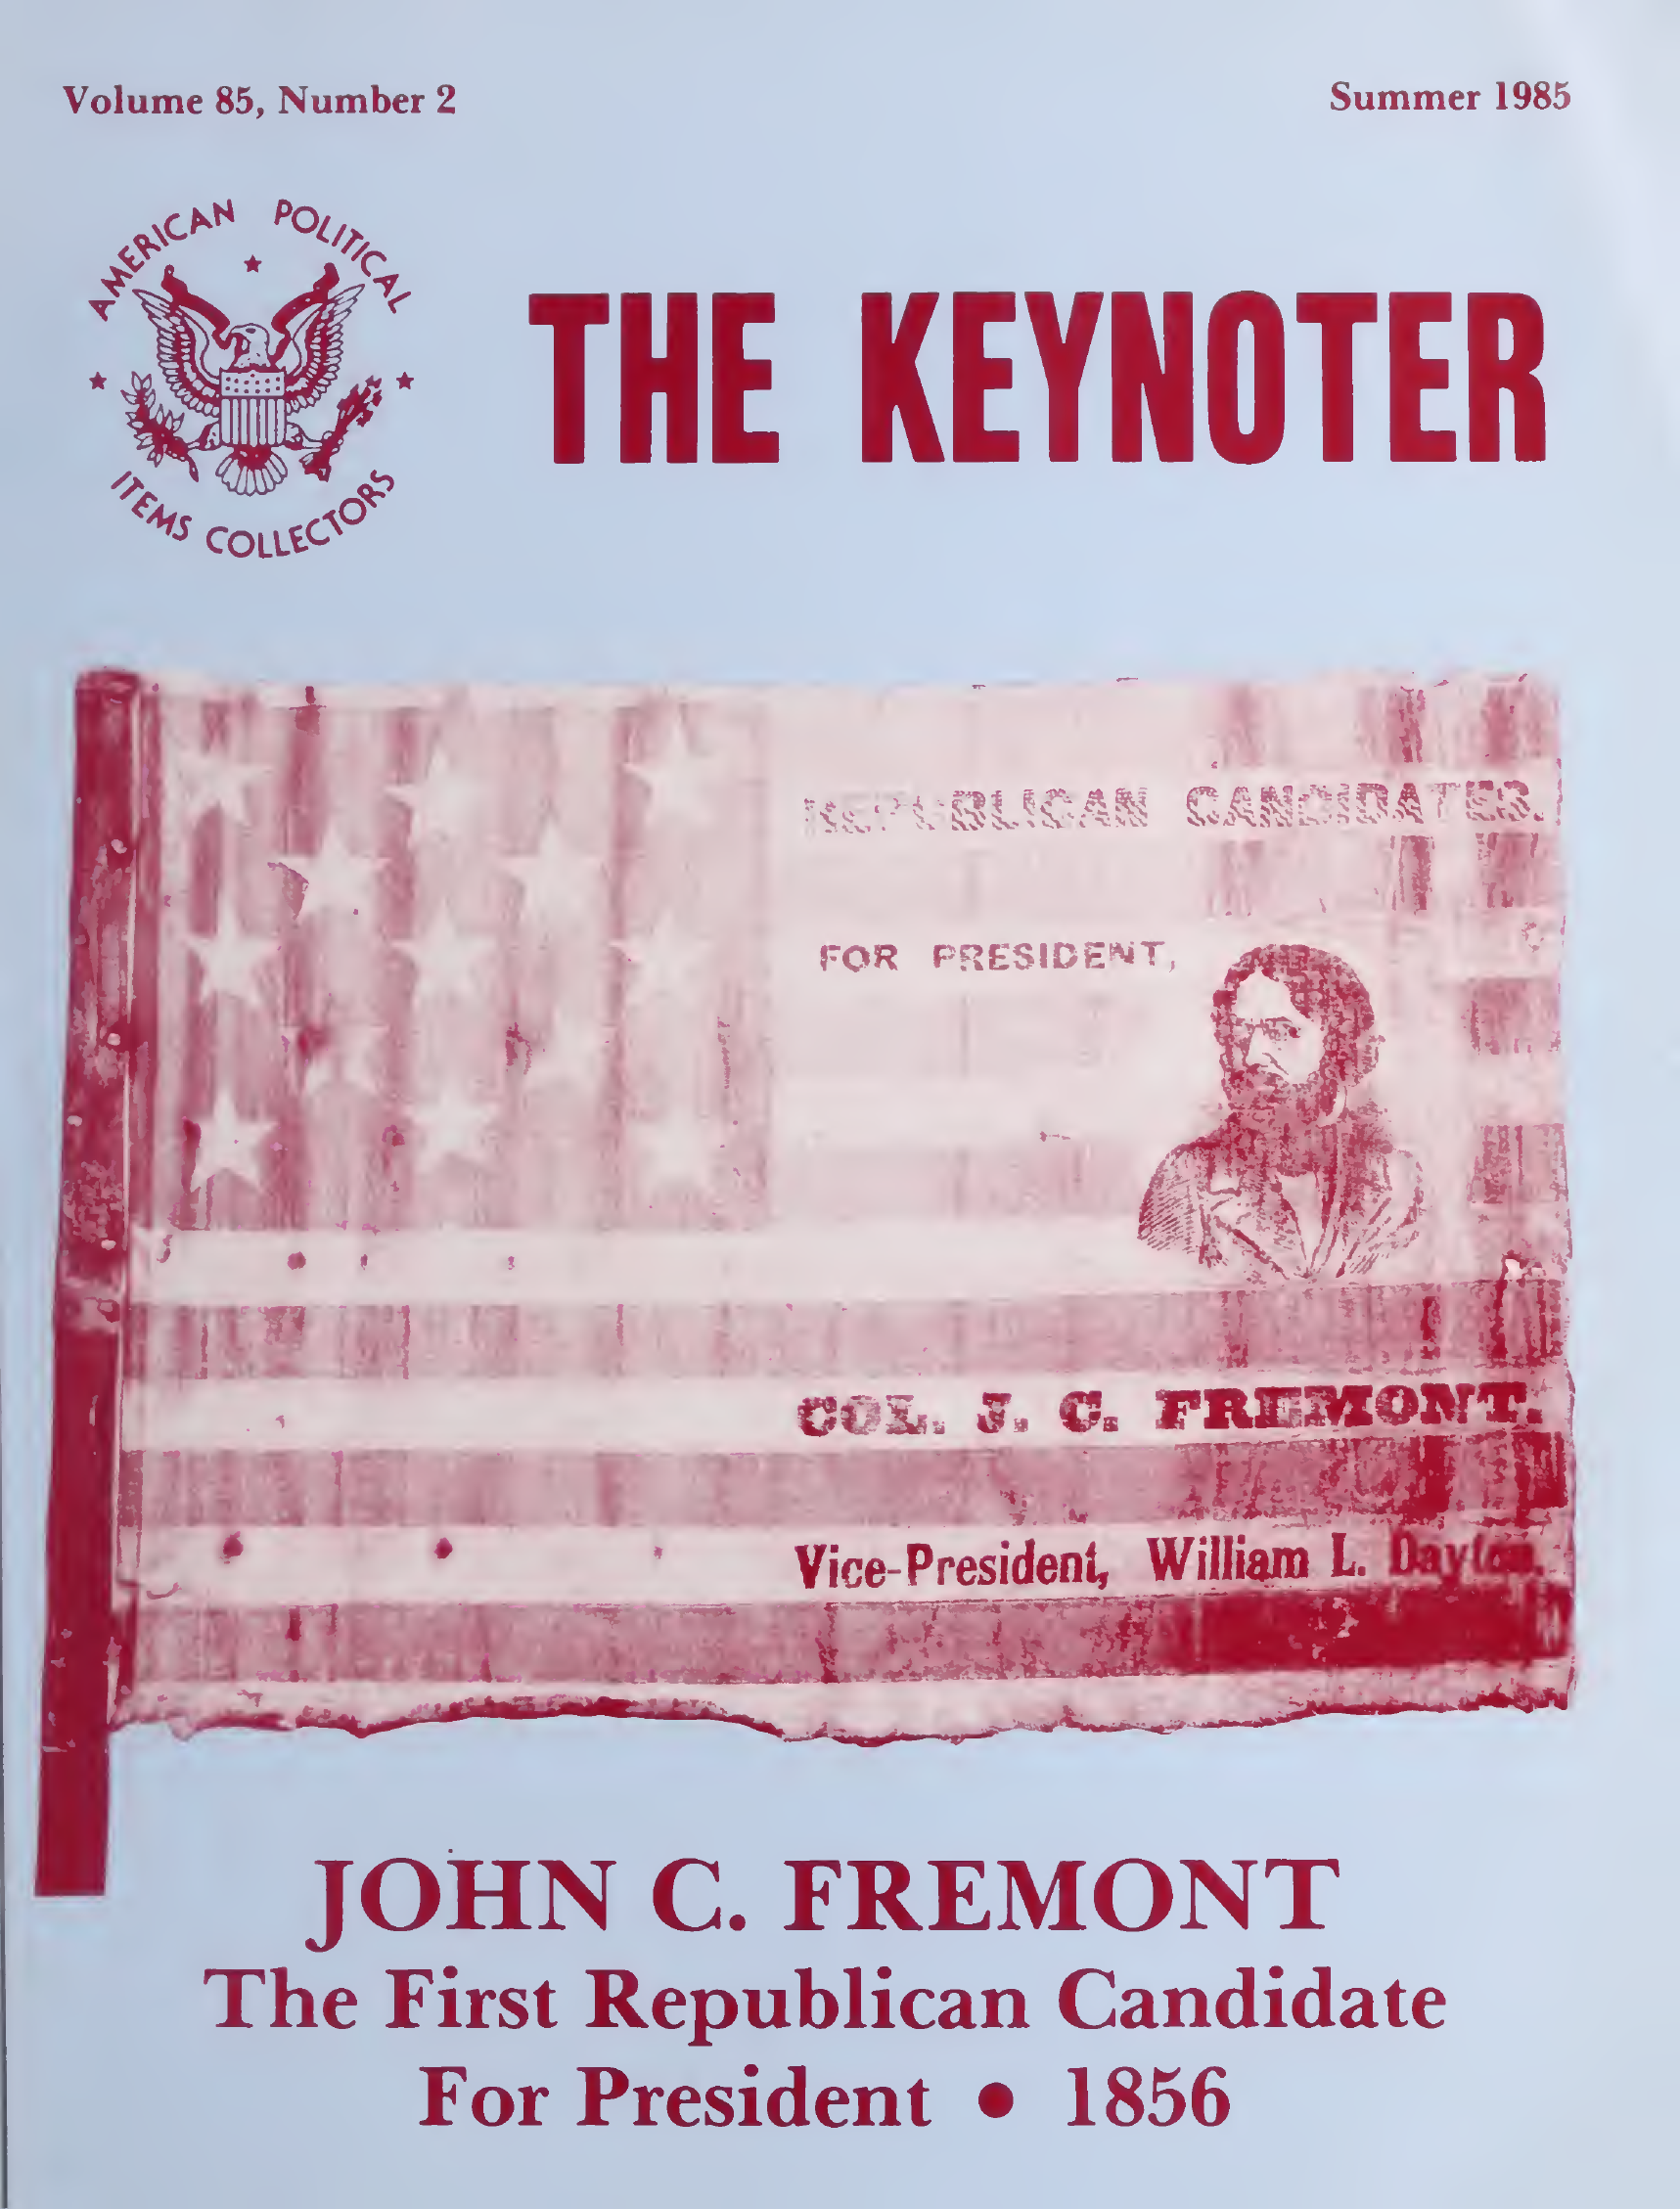 Keynoter 1985 - Summer - Issue 2